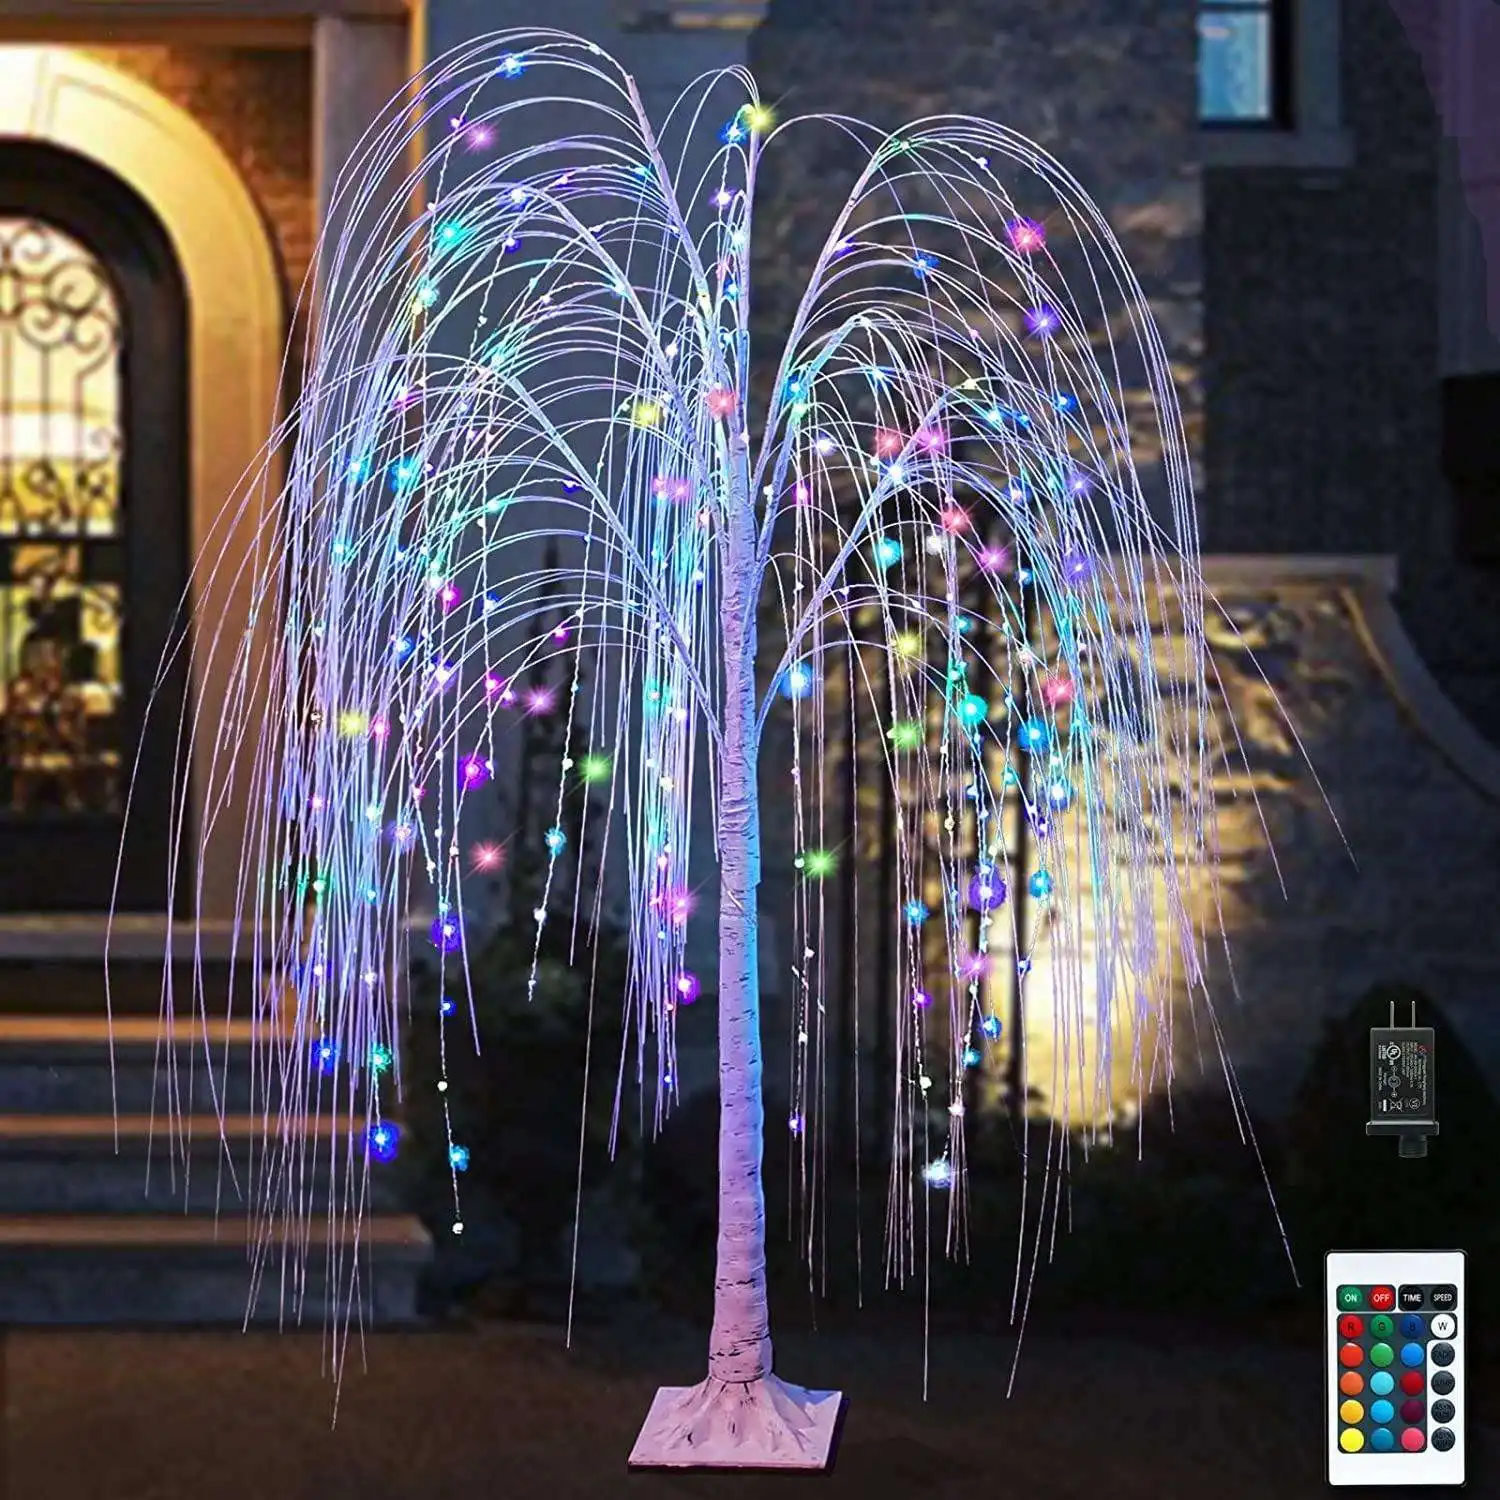 Größeres Bild anzeigen Teilen LED Weihnachts bäume Weiden dekorationen Straßen laternen Holiday Home Decor Luxus Ornamente Lampen Outdo